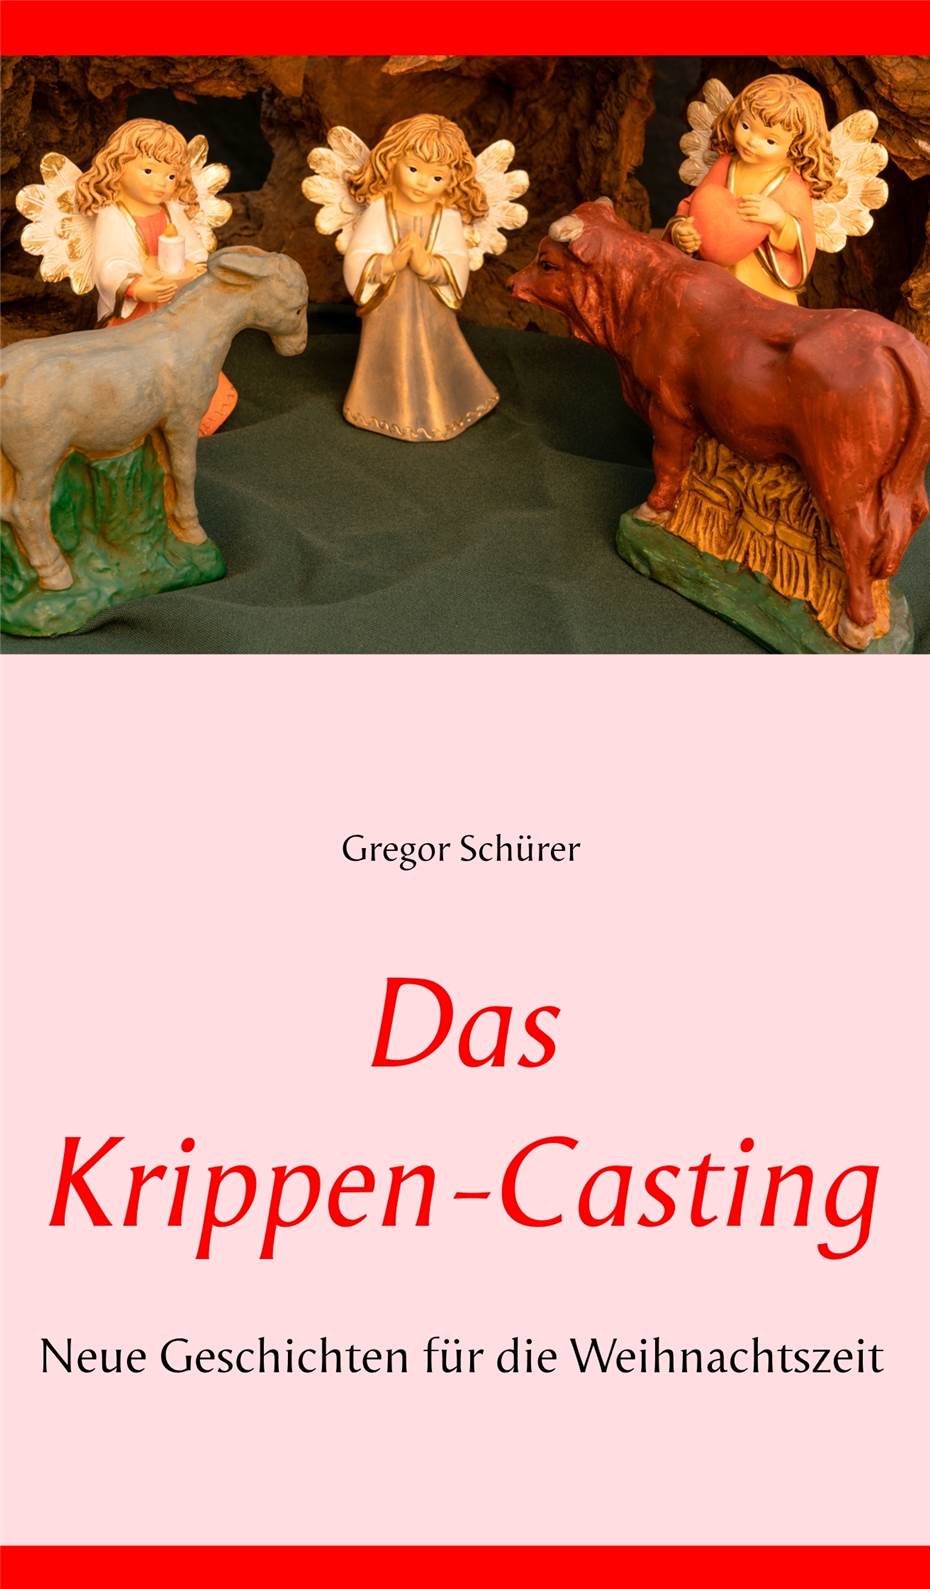 Gregor Schürer: „Wie Ochs und Esel aus Rech in mein Buch kamen“